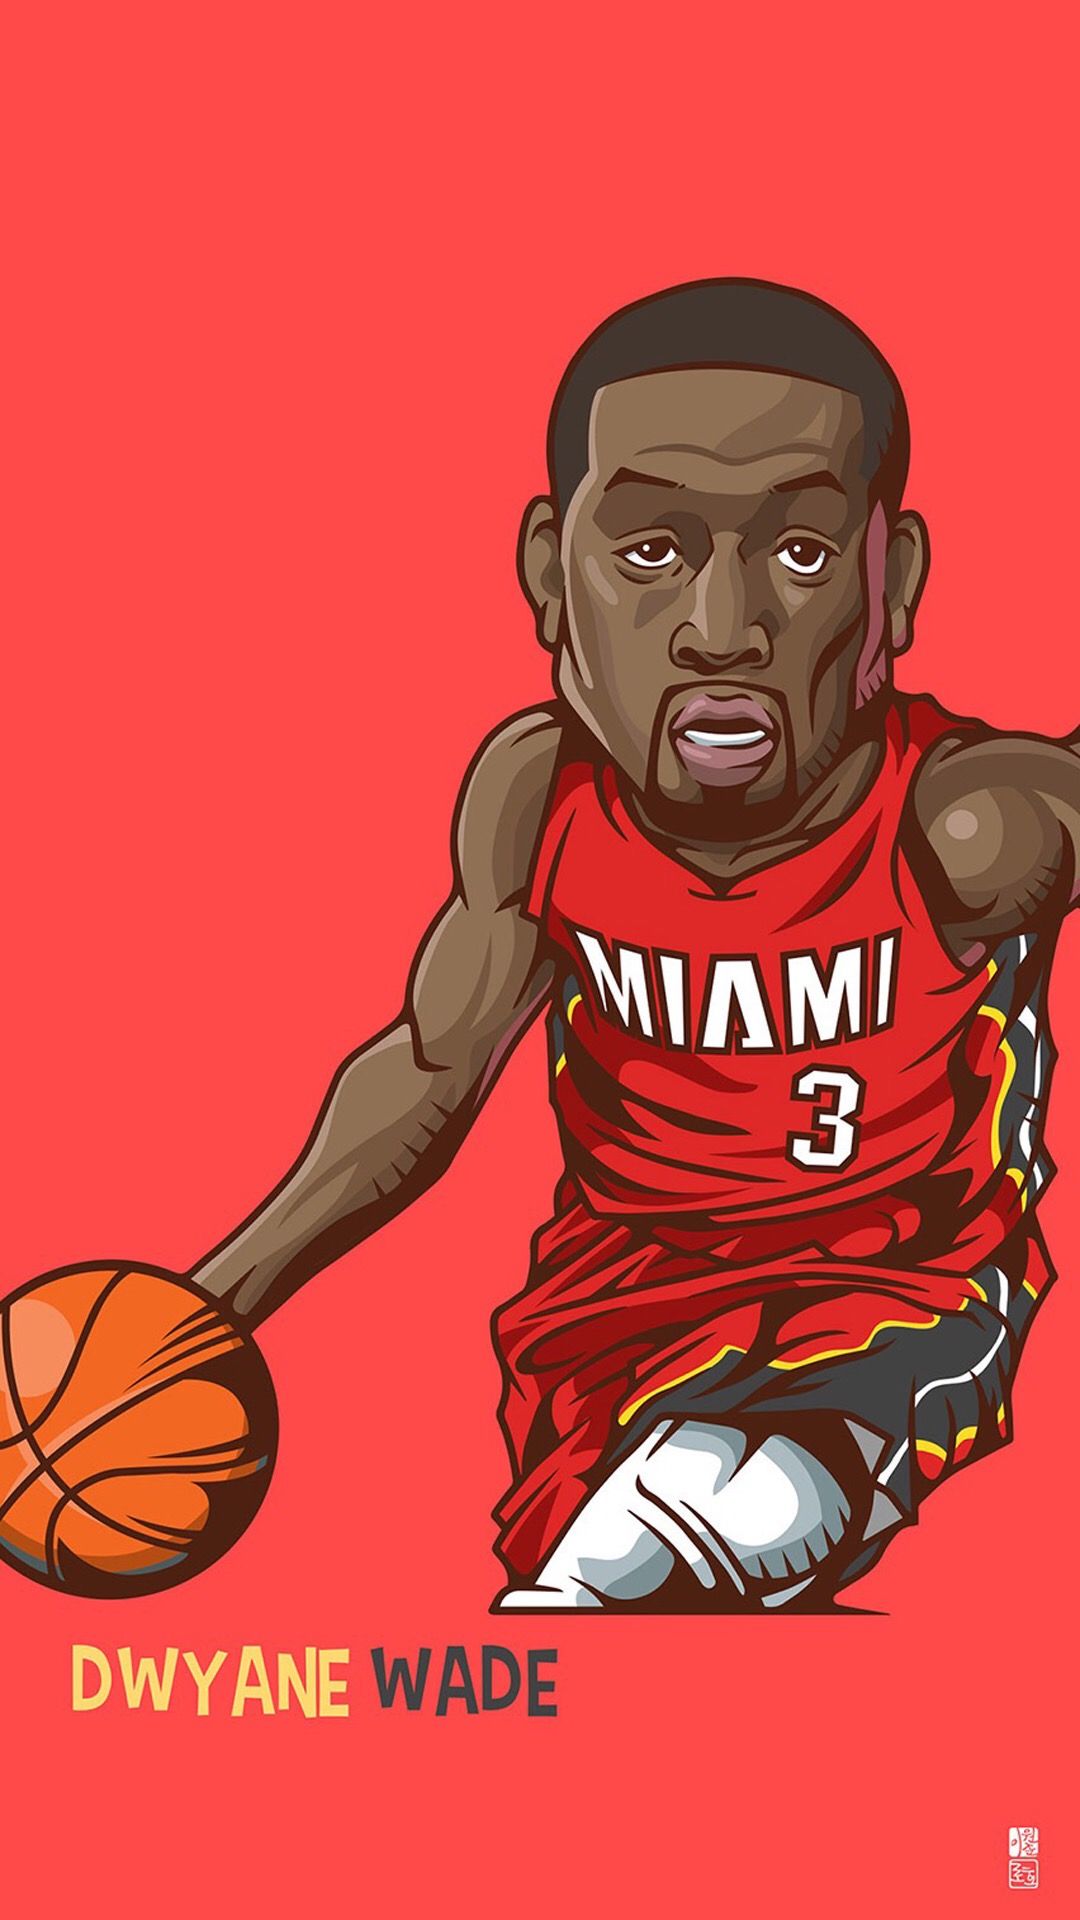 NBA Cartoon Wallpaper 71 images